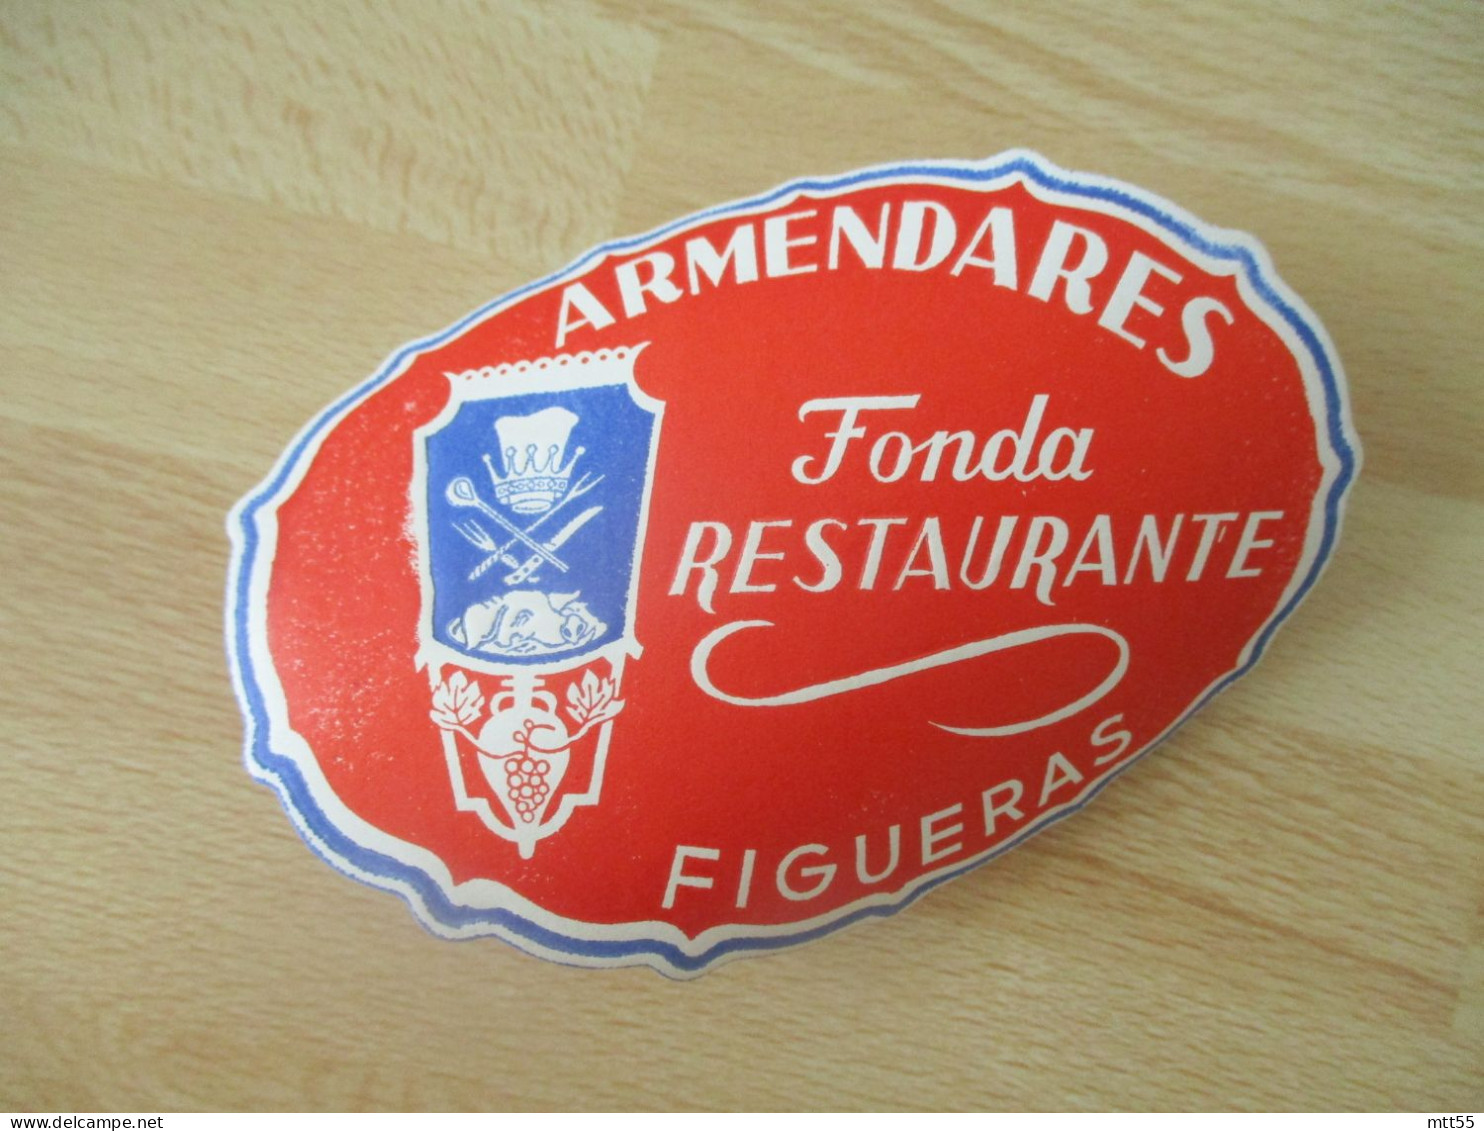 FIGUERAS ARMENDARES FONDA RESTAURANTE ETIQUETTE HOTEL - Hotel Labels